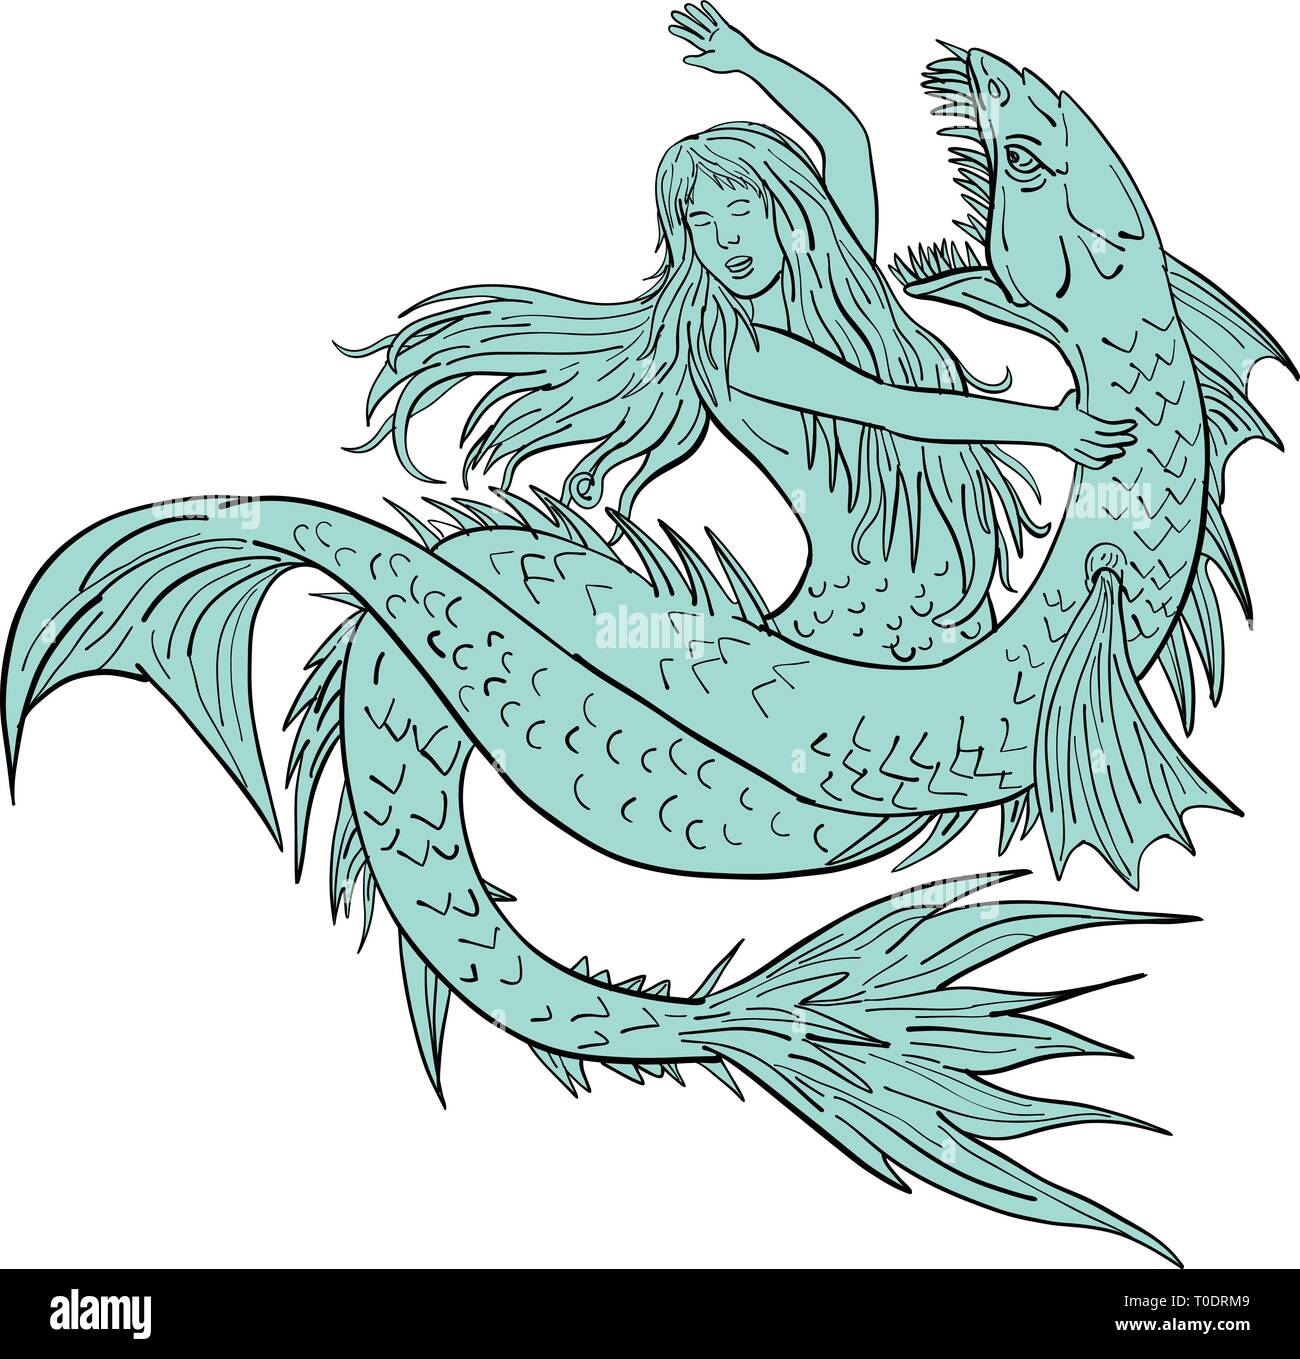 Croquis dessin illustration d'un style d'une sirène ou d'une sirène aux prises un serpent de mer ou monstre isolé sur fond blanc. Illustration de Vecteur